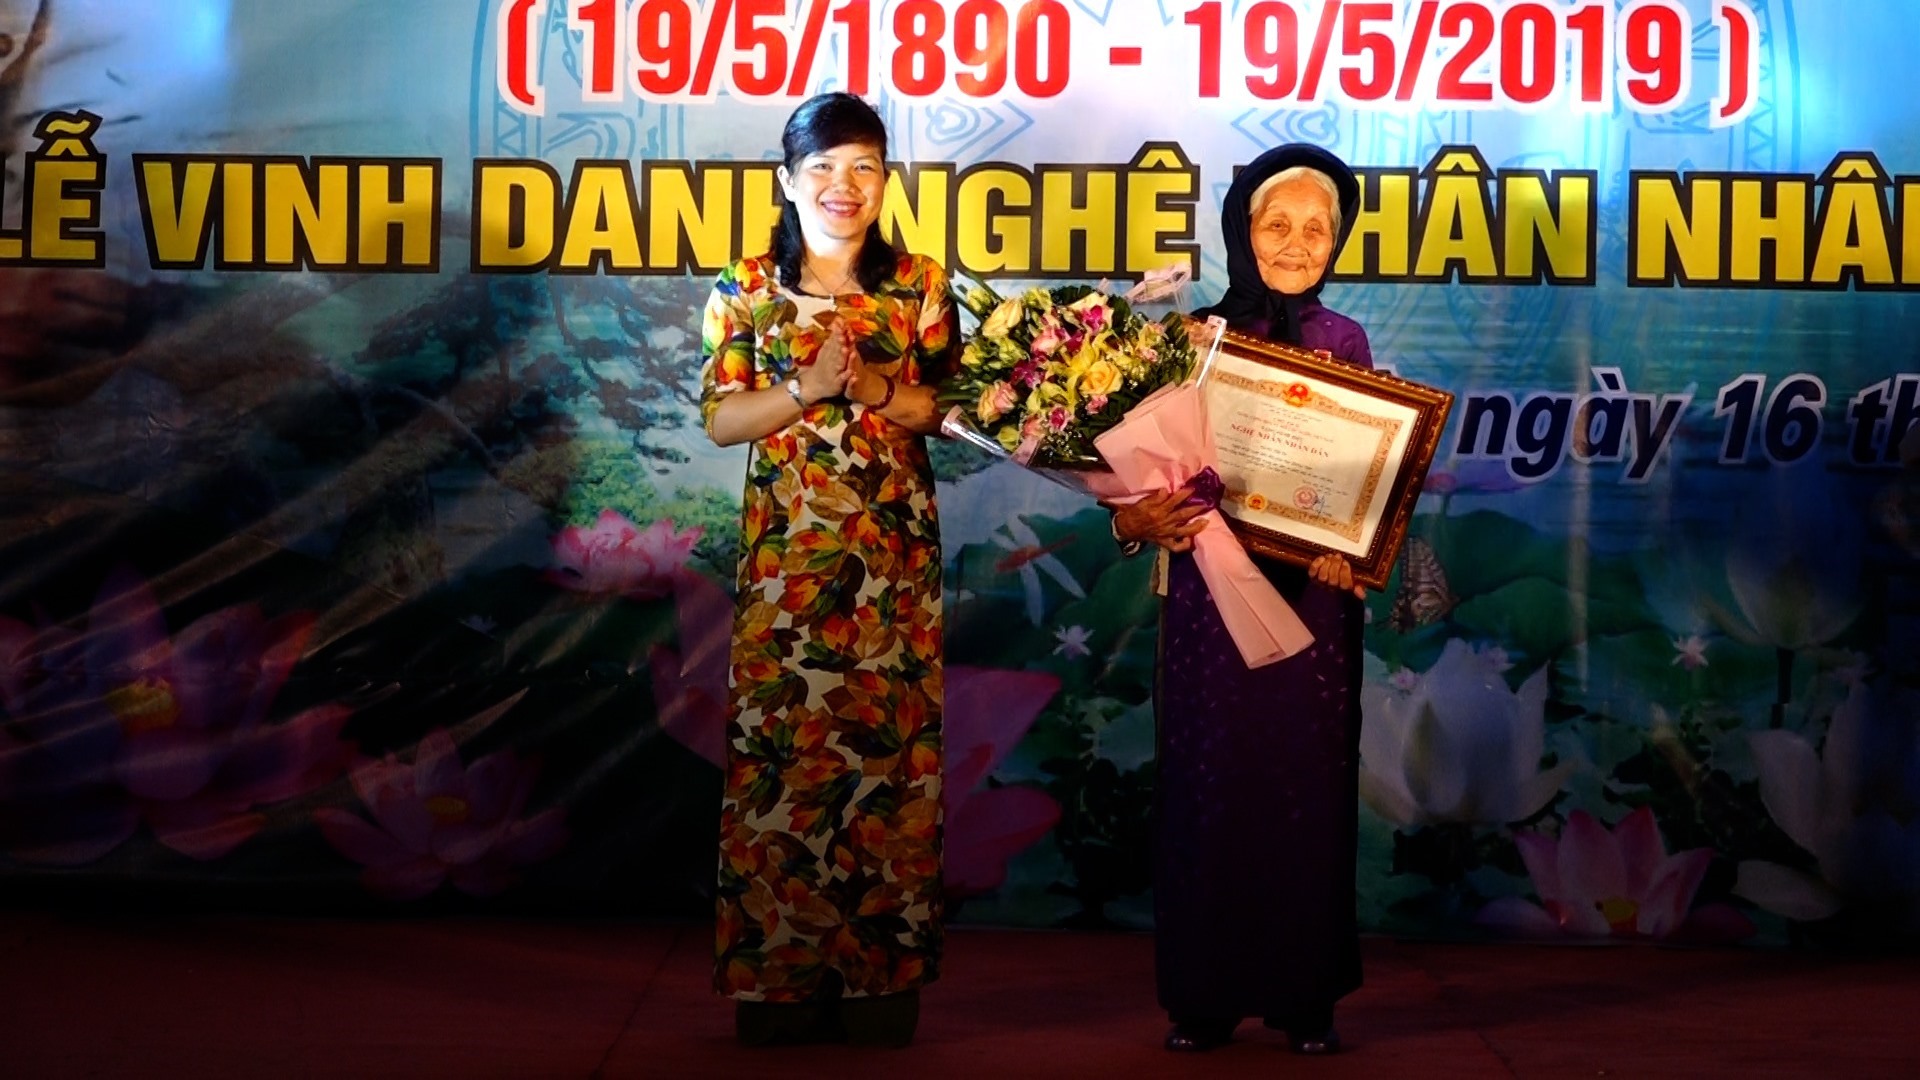 Cụ Đặng Thị Tự đón nhận danh hiệu nghệ nhân nhân dân năm 2019.